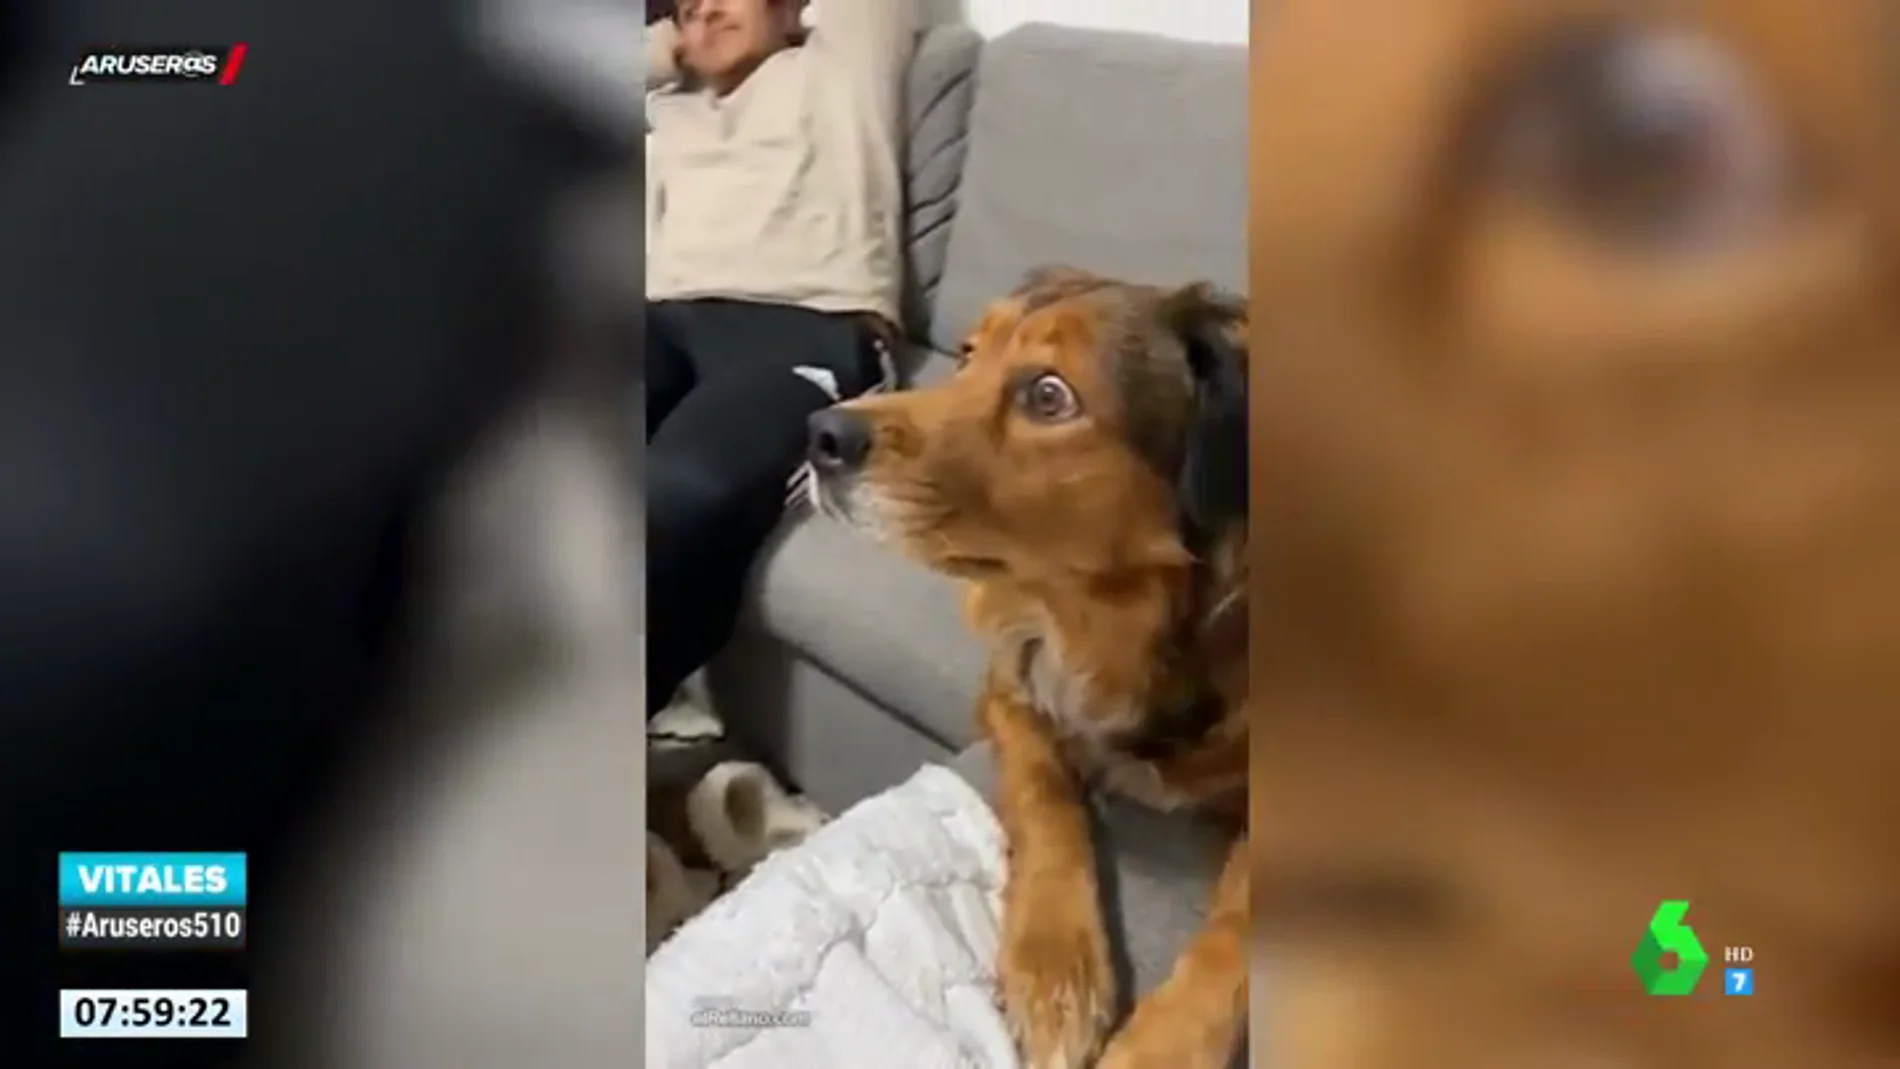 La reacción de un perro al ver un documental sobre ardillas en la televisión